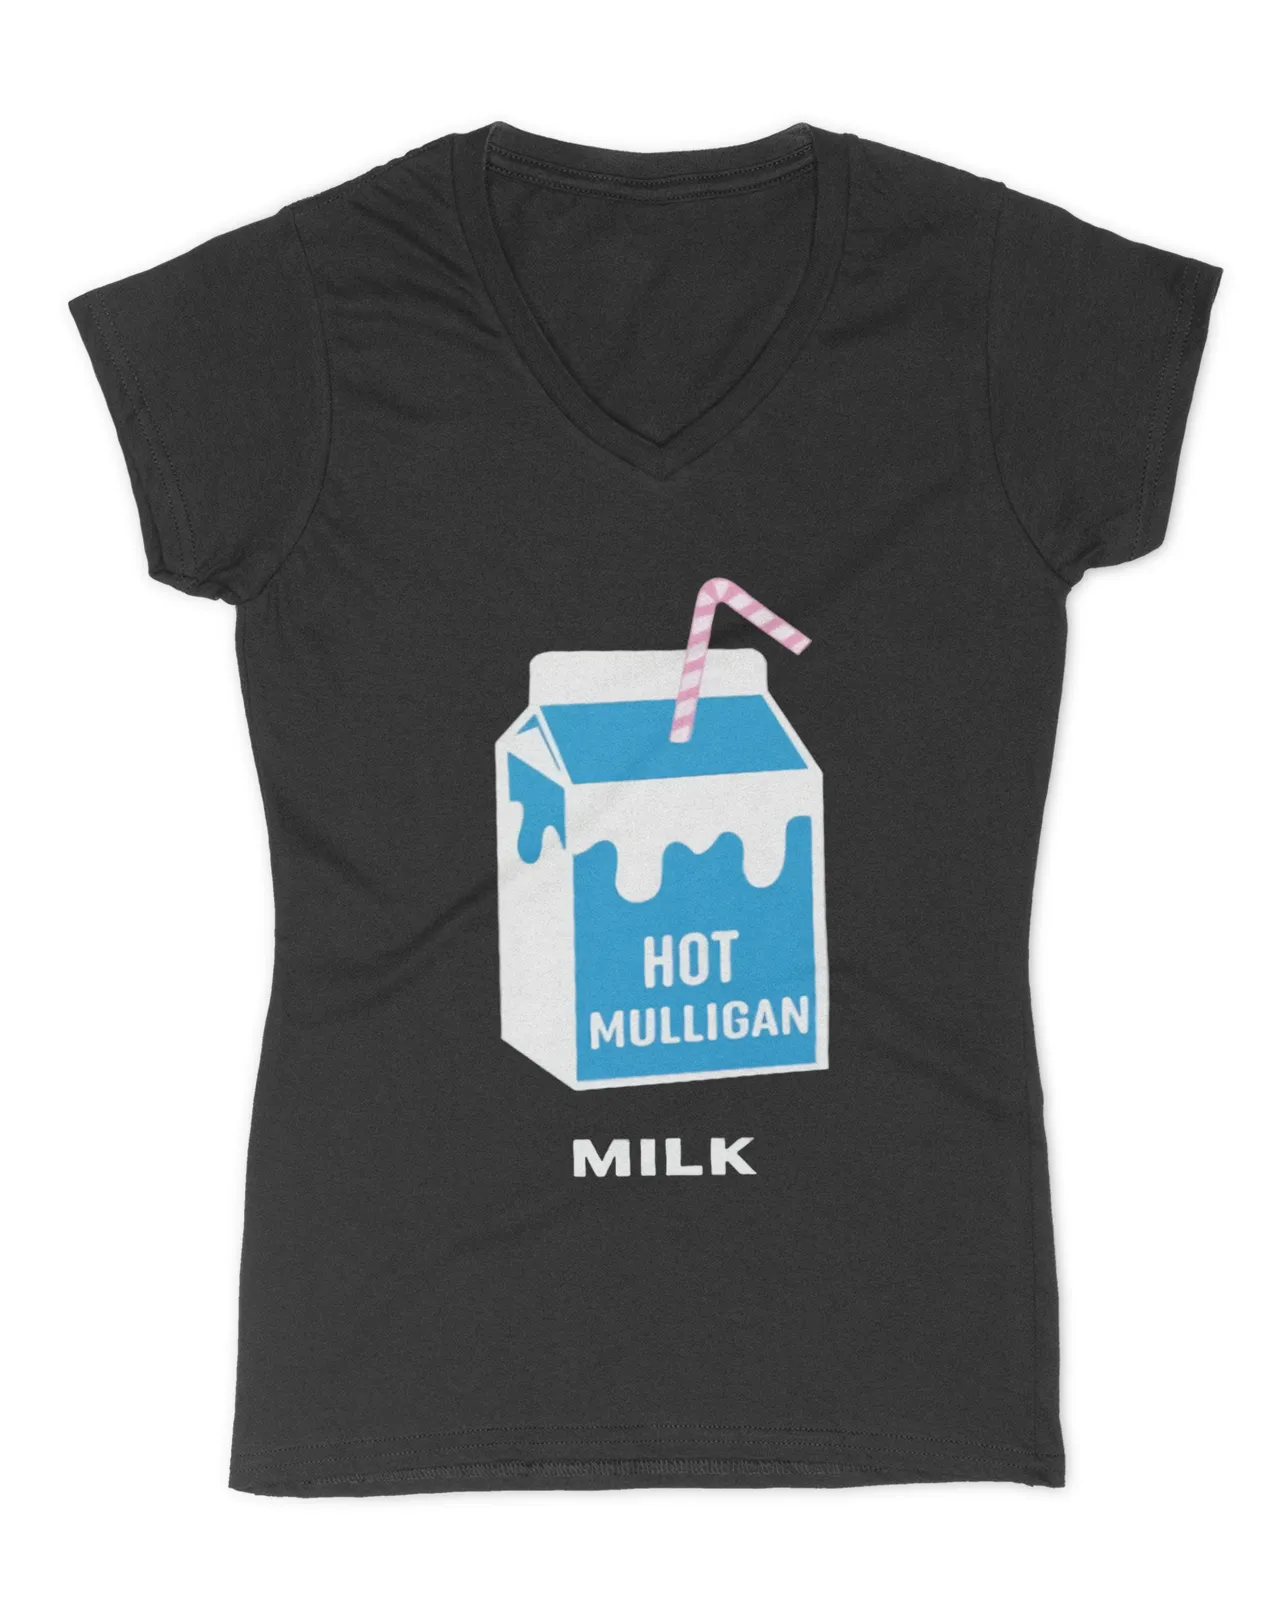 Hot Mulligan Milk Shirt